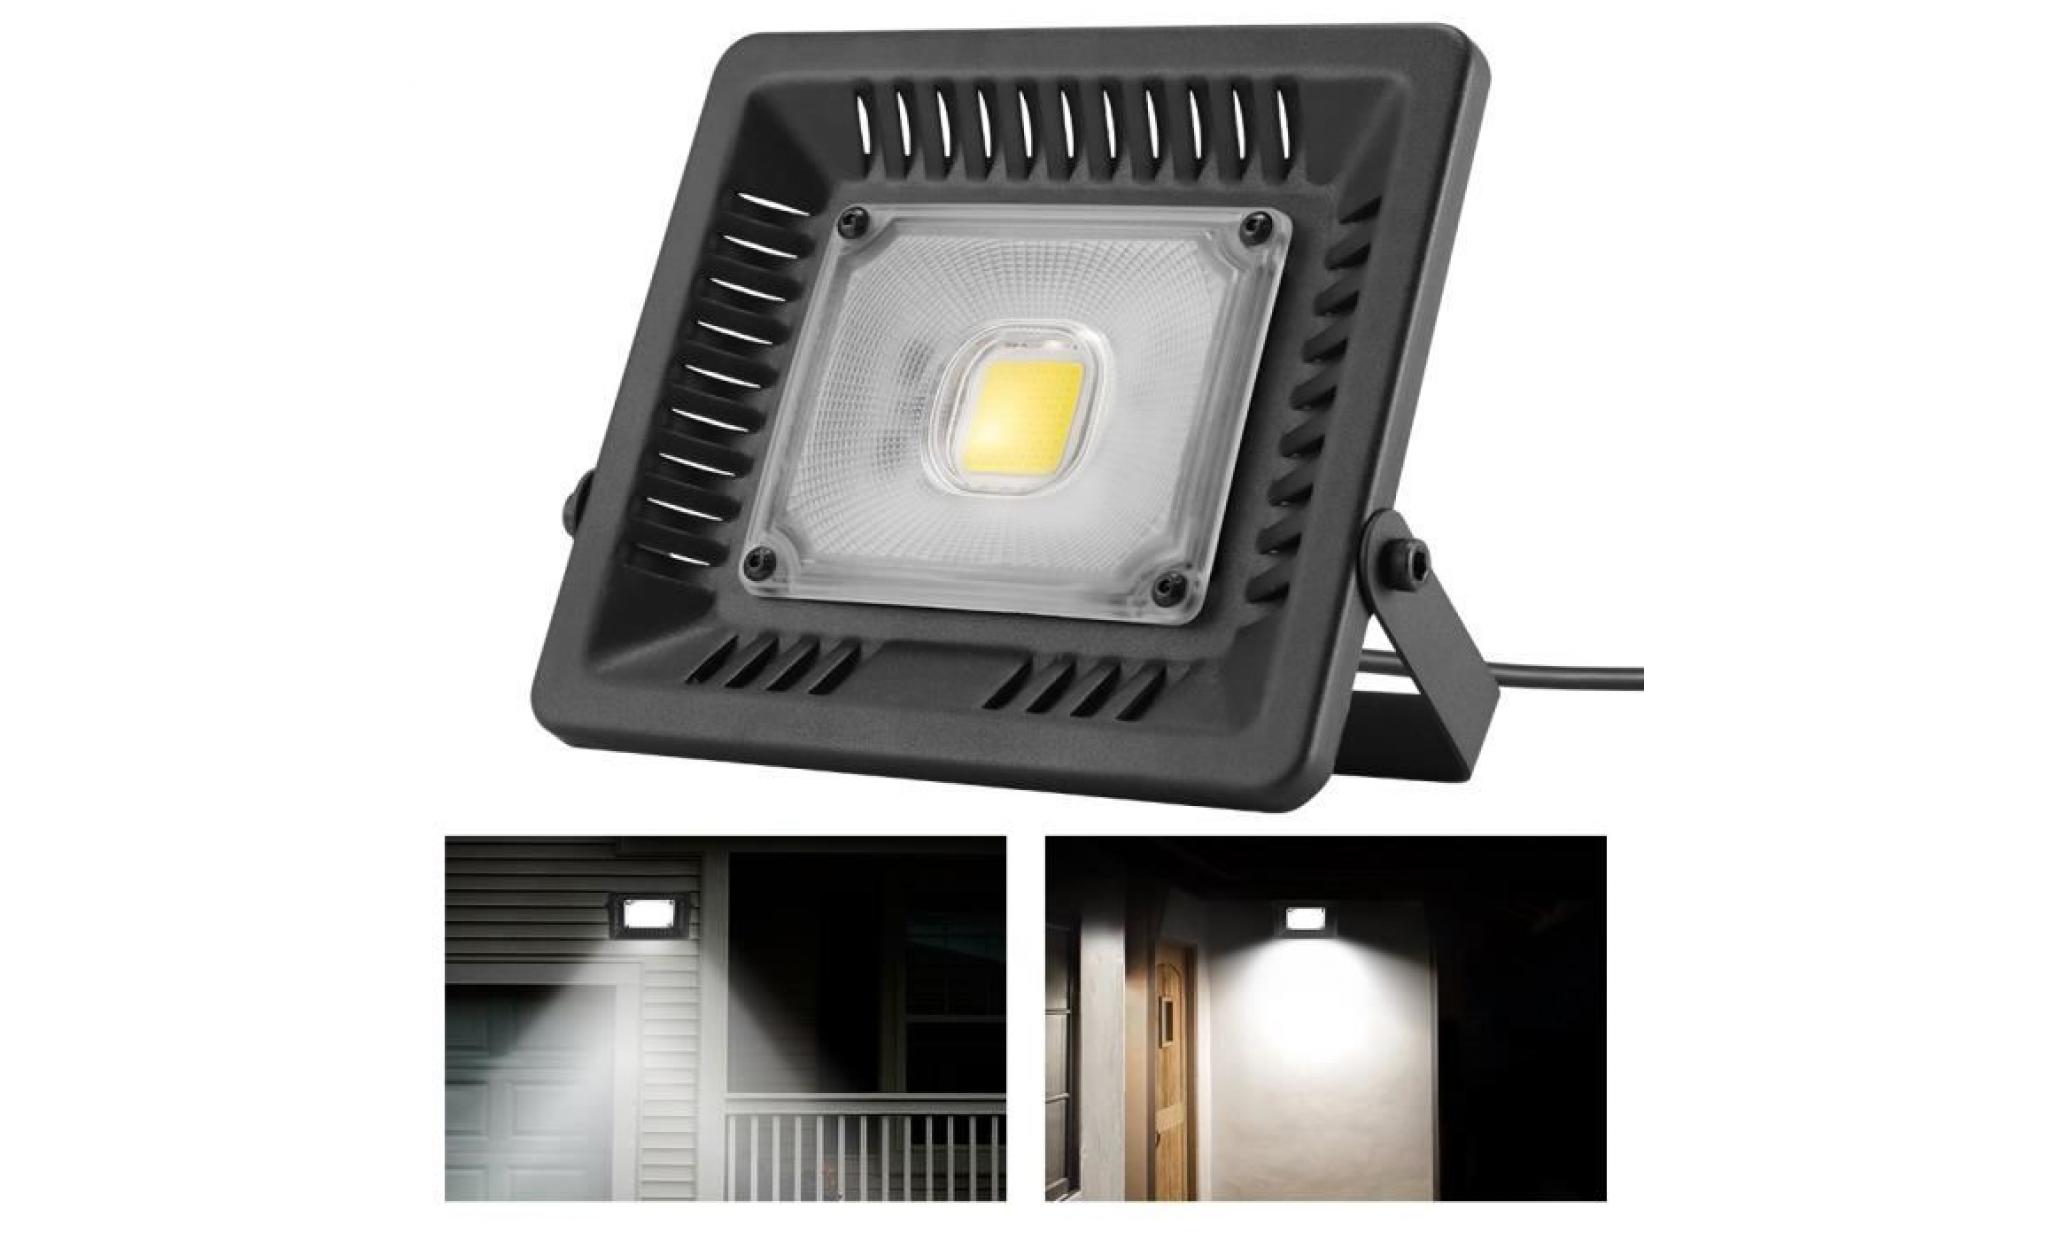 30w projecteur led floodlight lampe spot Éclairage extérieur intérieur luminaire Étanche ip67 haute luminosité